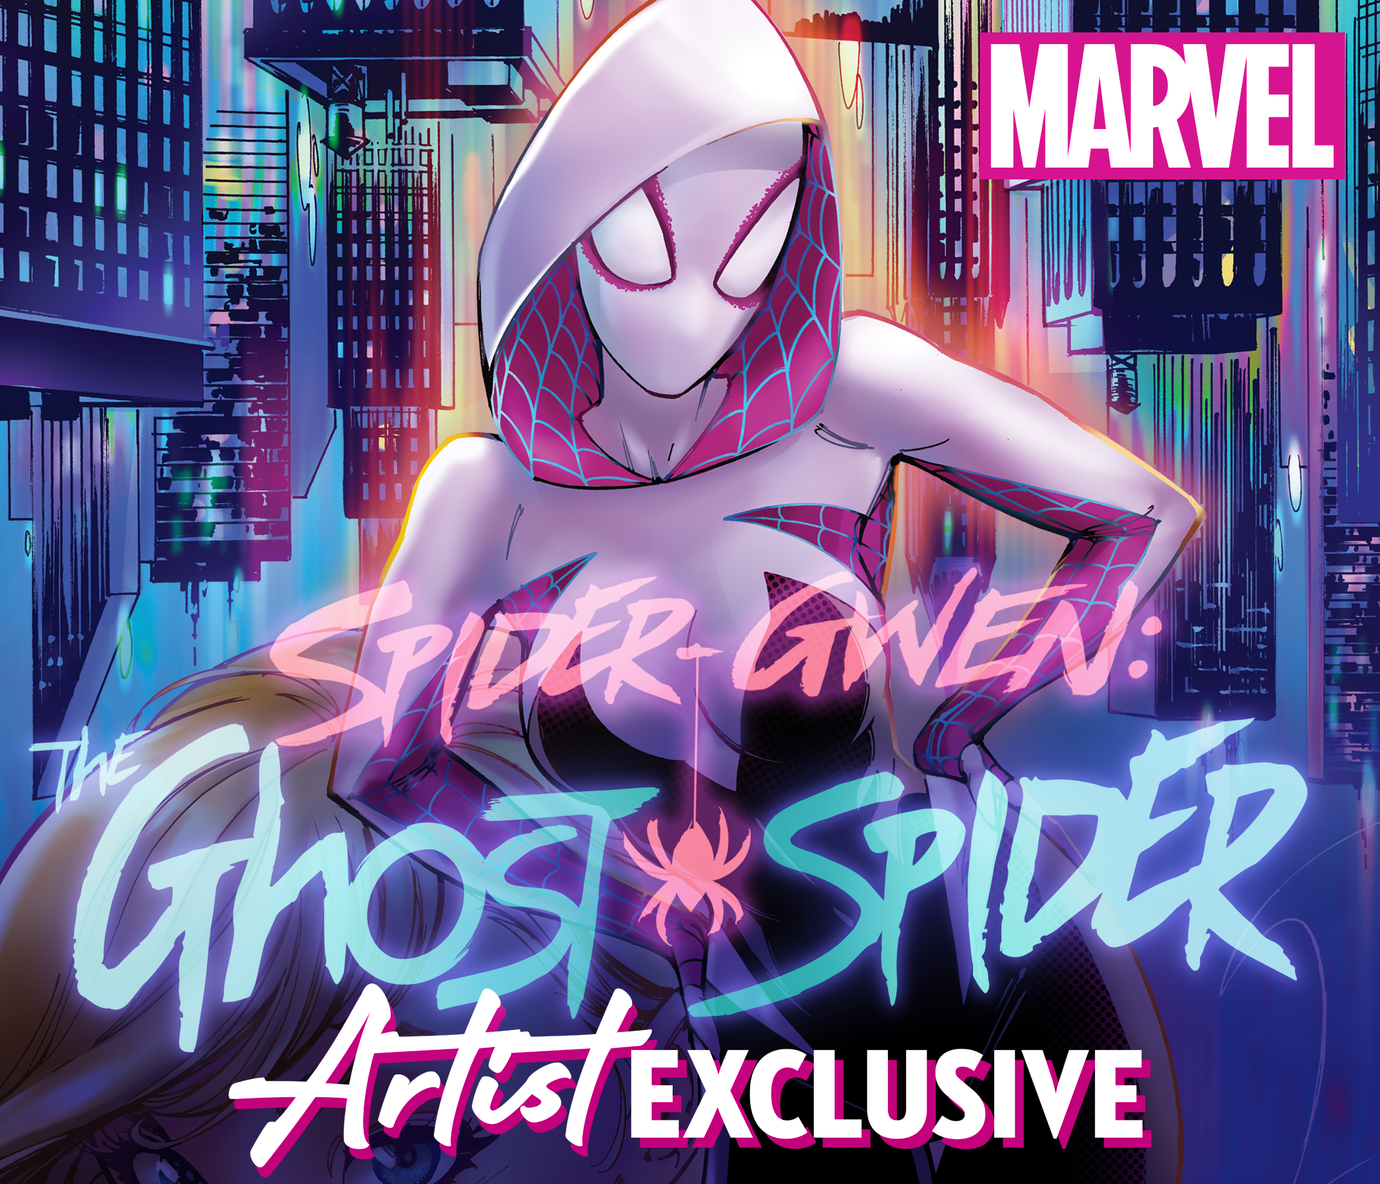 Spider-Gwen: The Ghost Spider